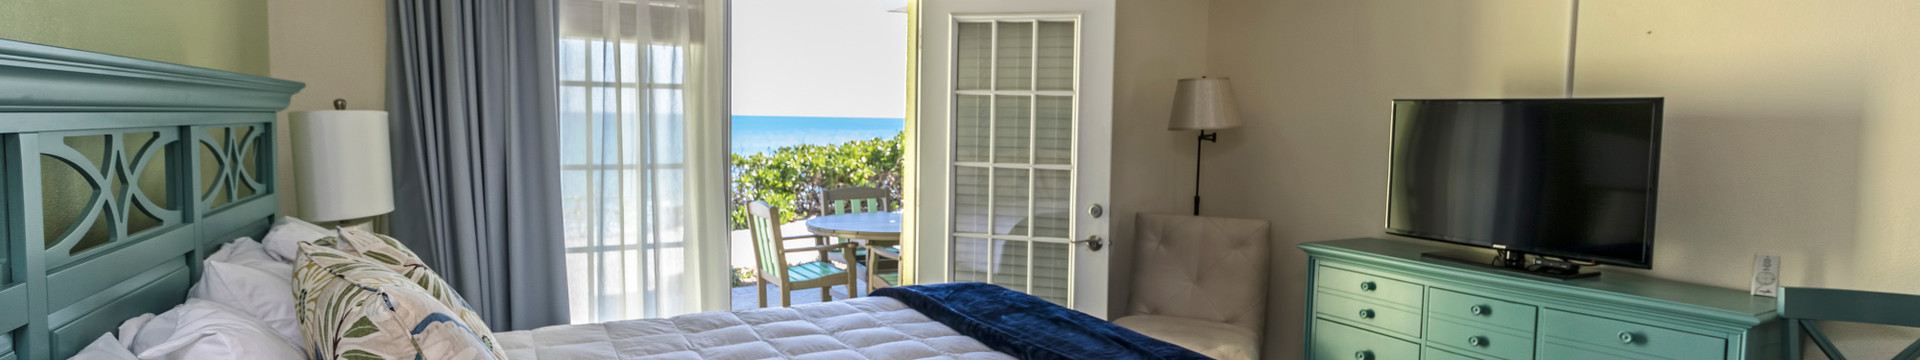 Bedroom in the Coastal Suite - Sea View Inn